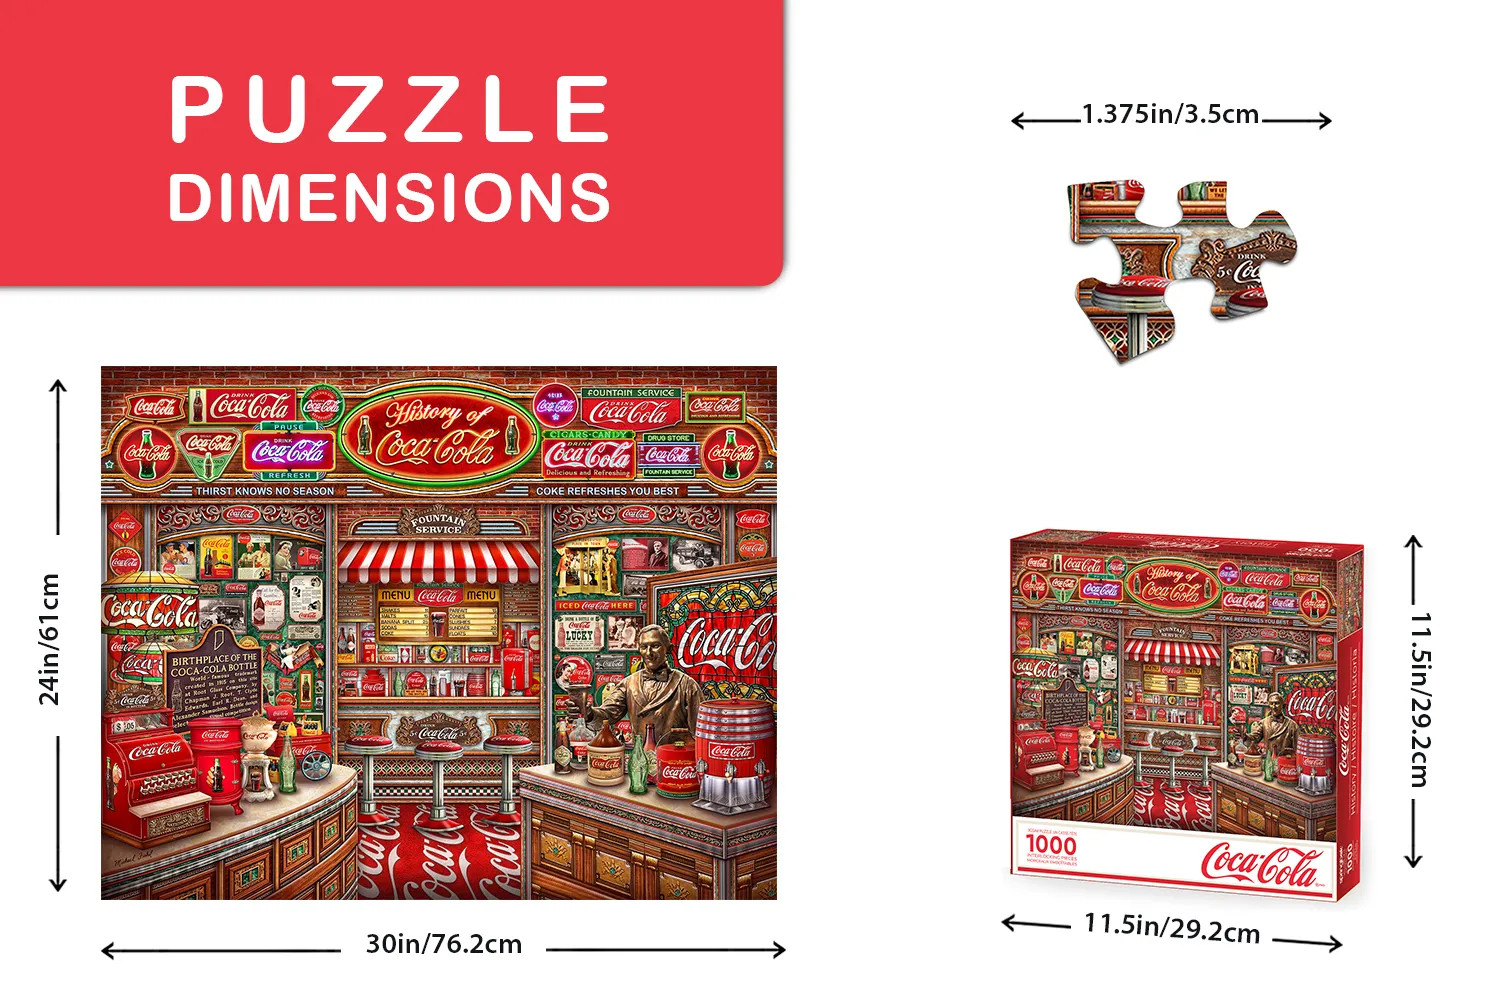 Coca Cola History 1000 Piece Jigsaw Puzzle